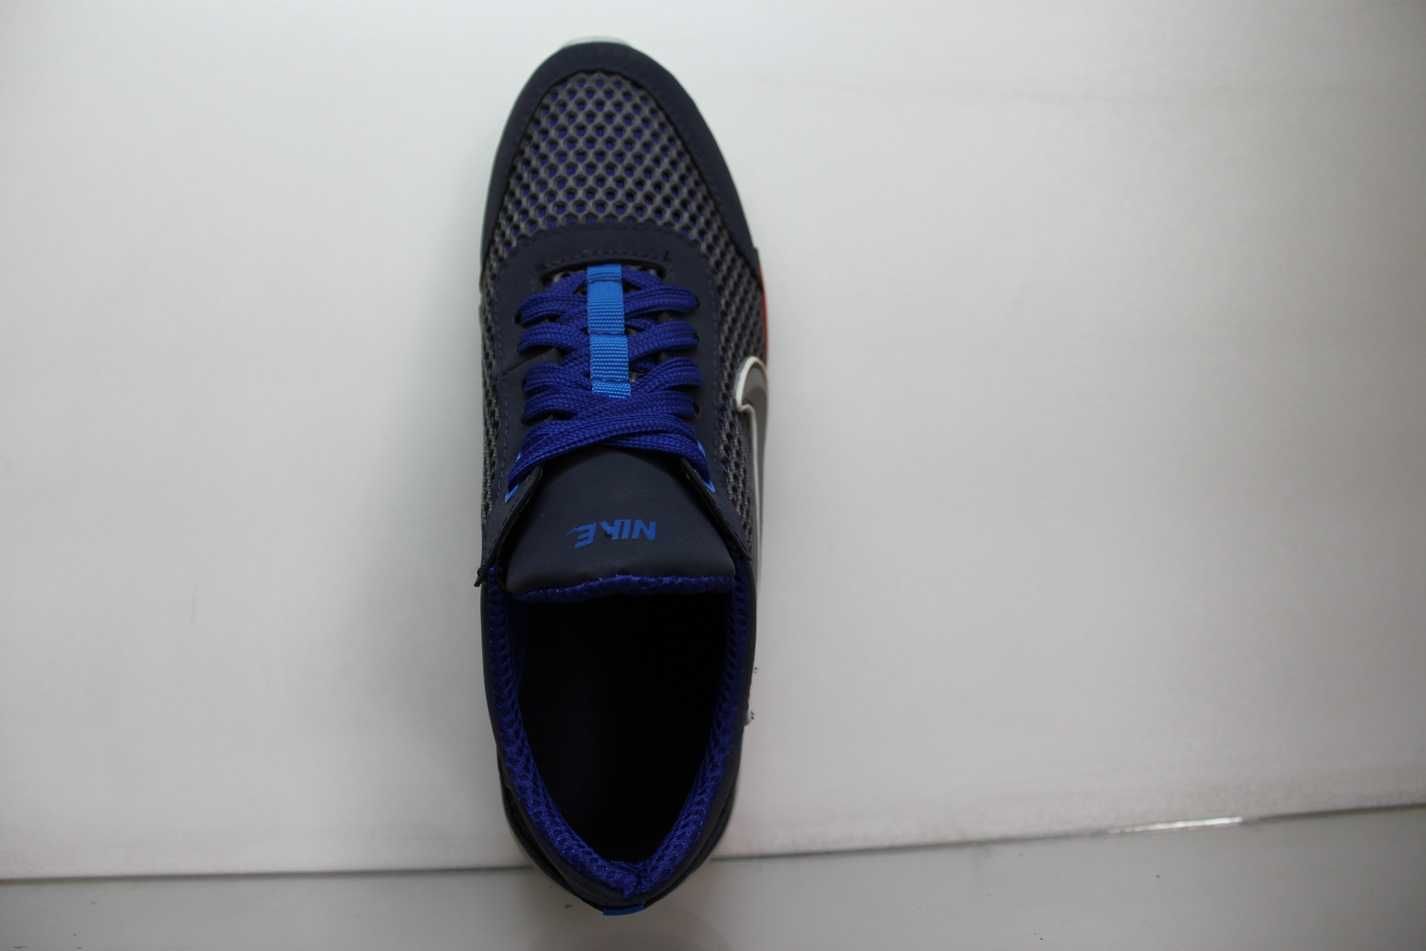 Nike стильные синие кроссовки кеды мокасины кросівки сетка (код:24син)